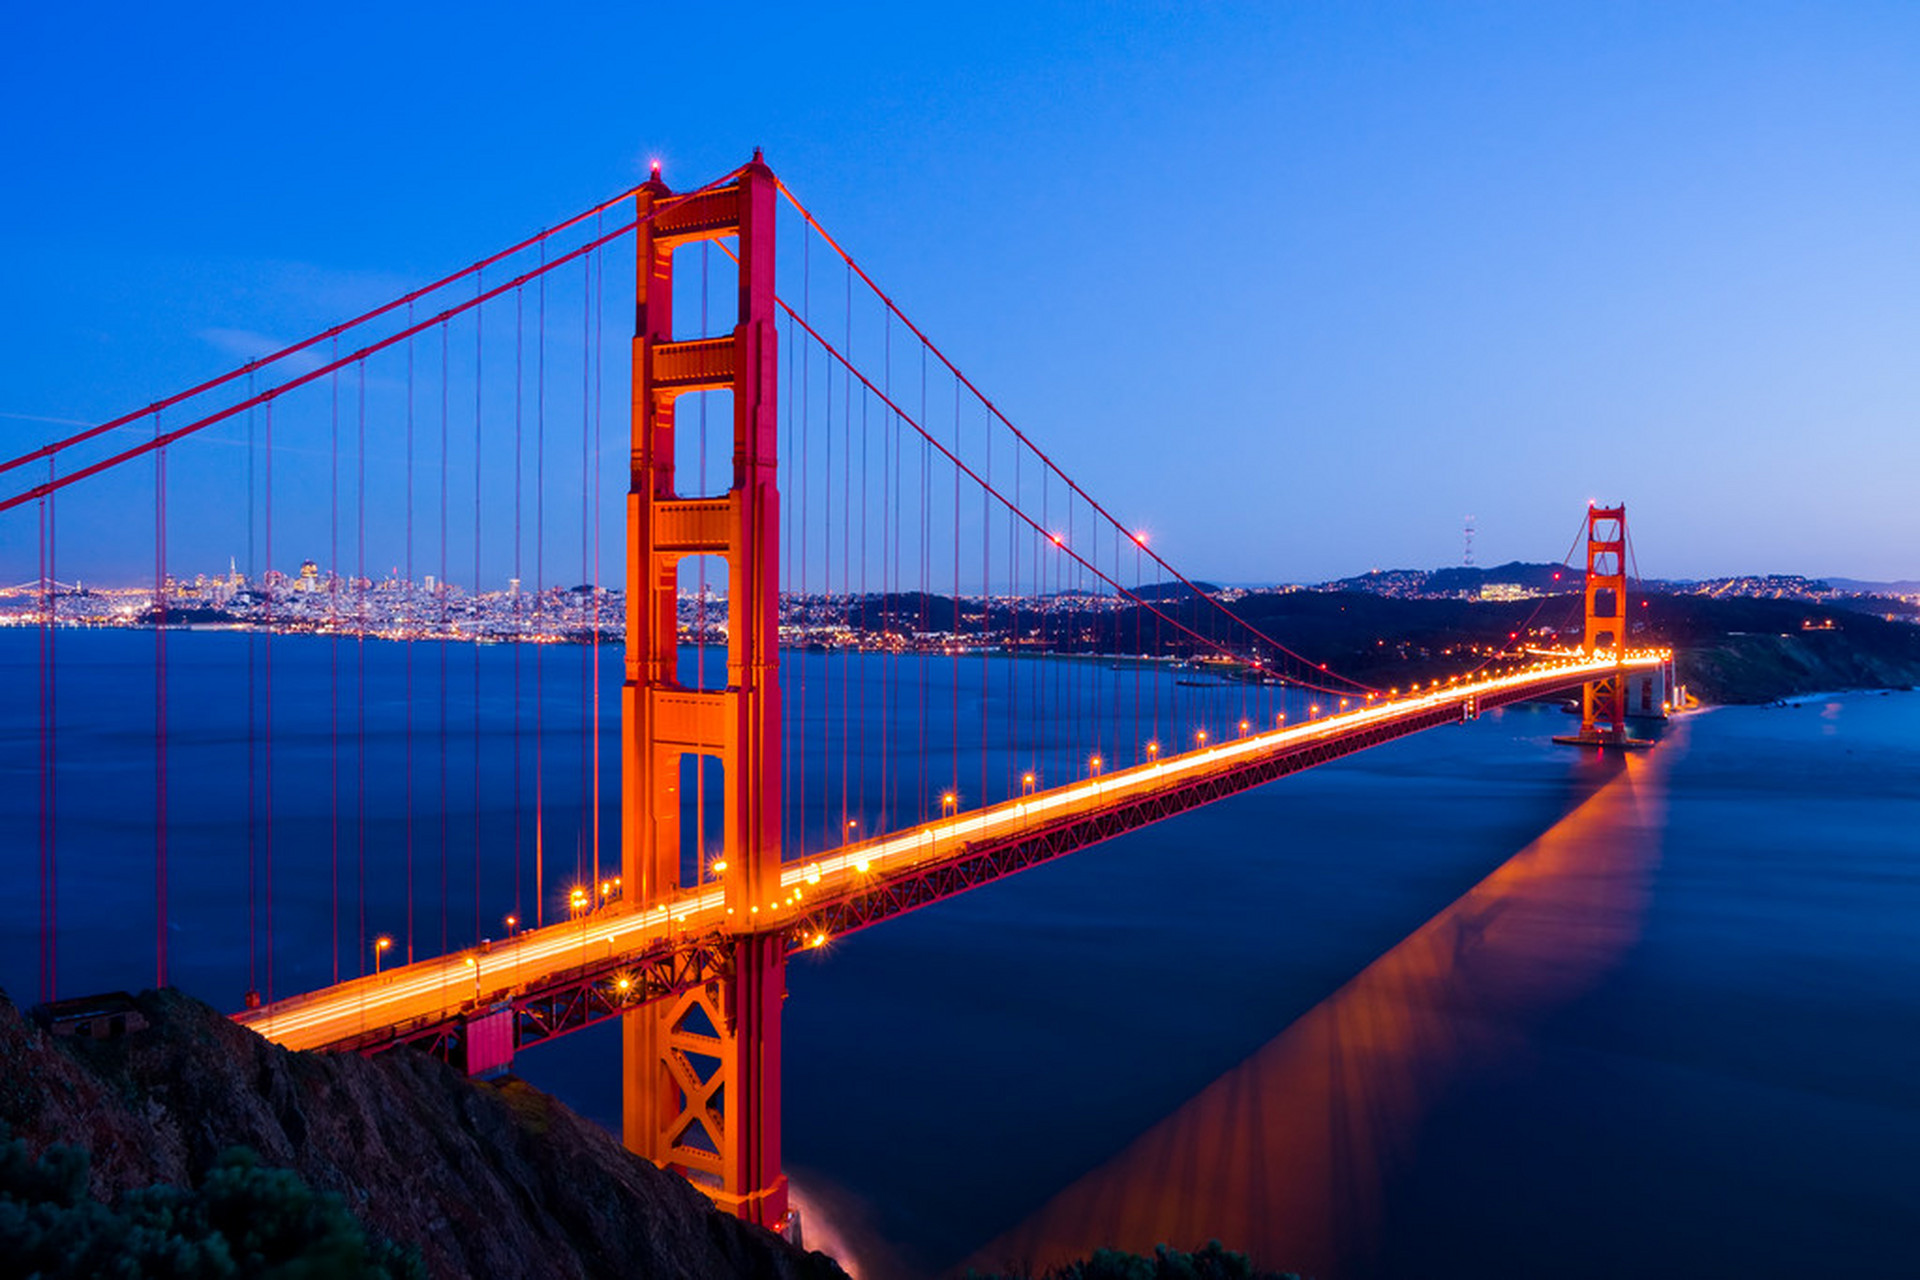 【世界名桥之金门大桥】  金门大桥,位于美国金门海峡之上,连接旧金山